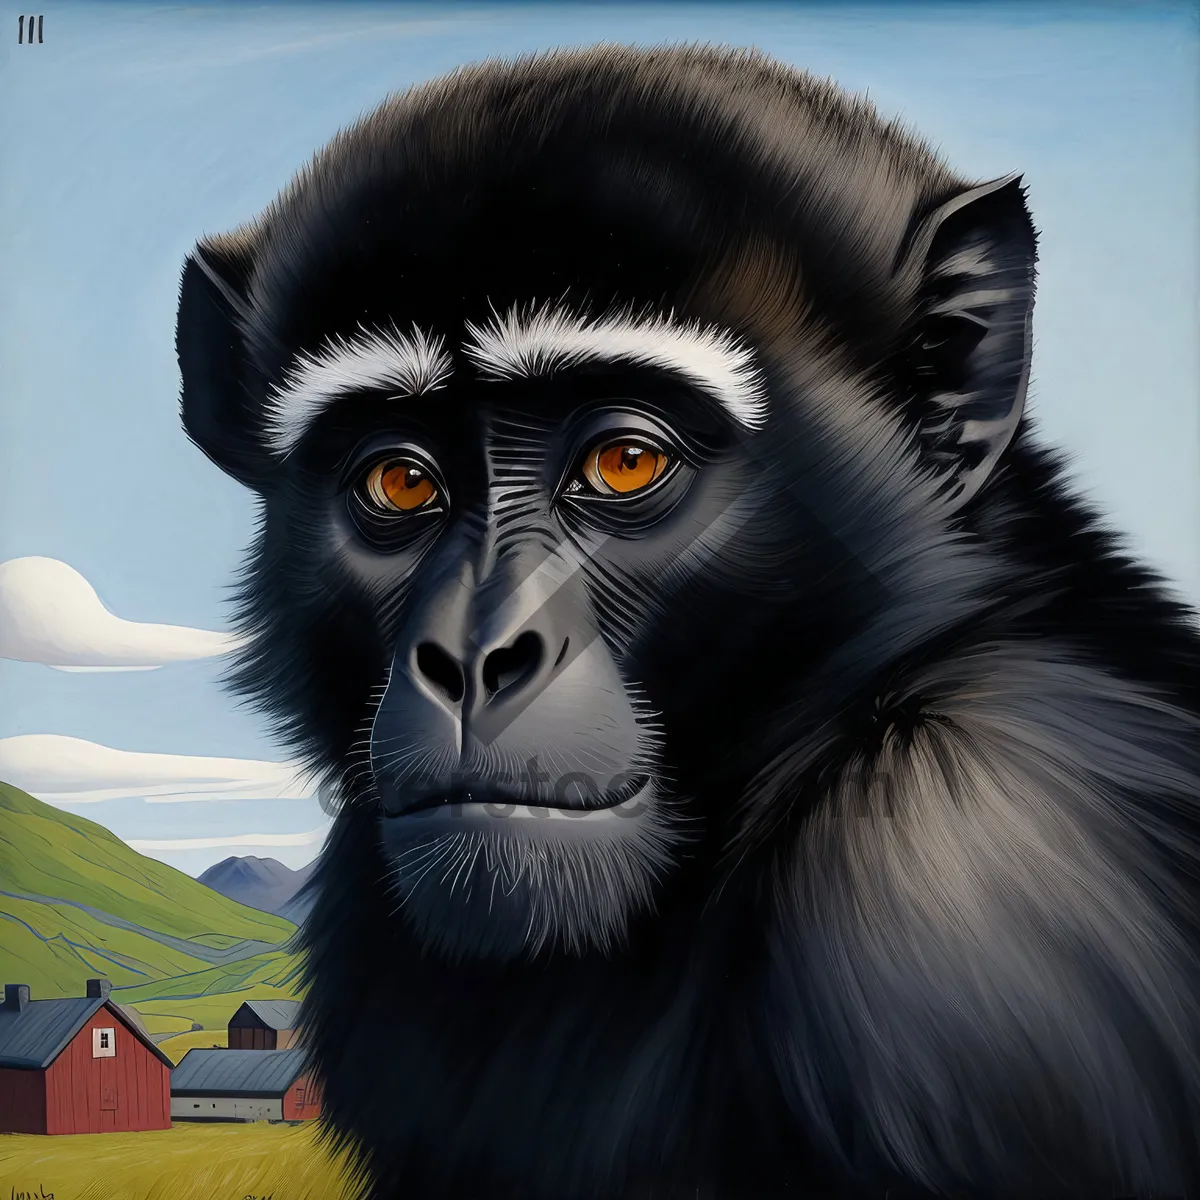 Picture of Wild Primate with Black Fur in Safari